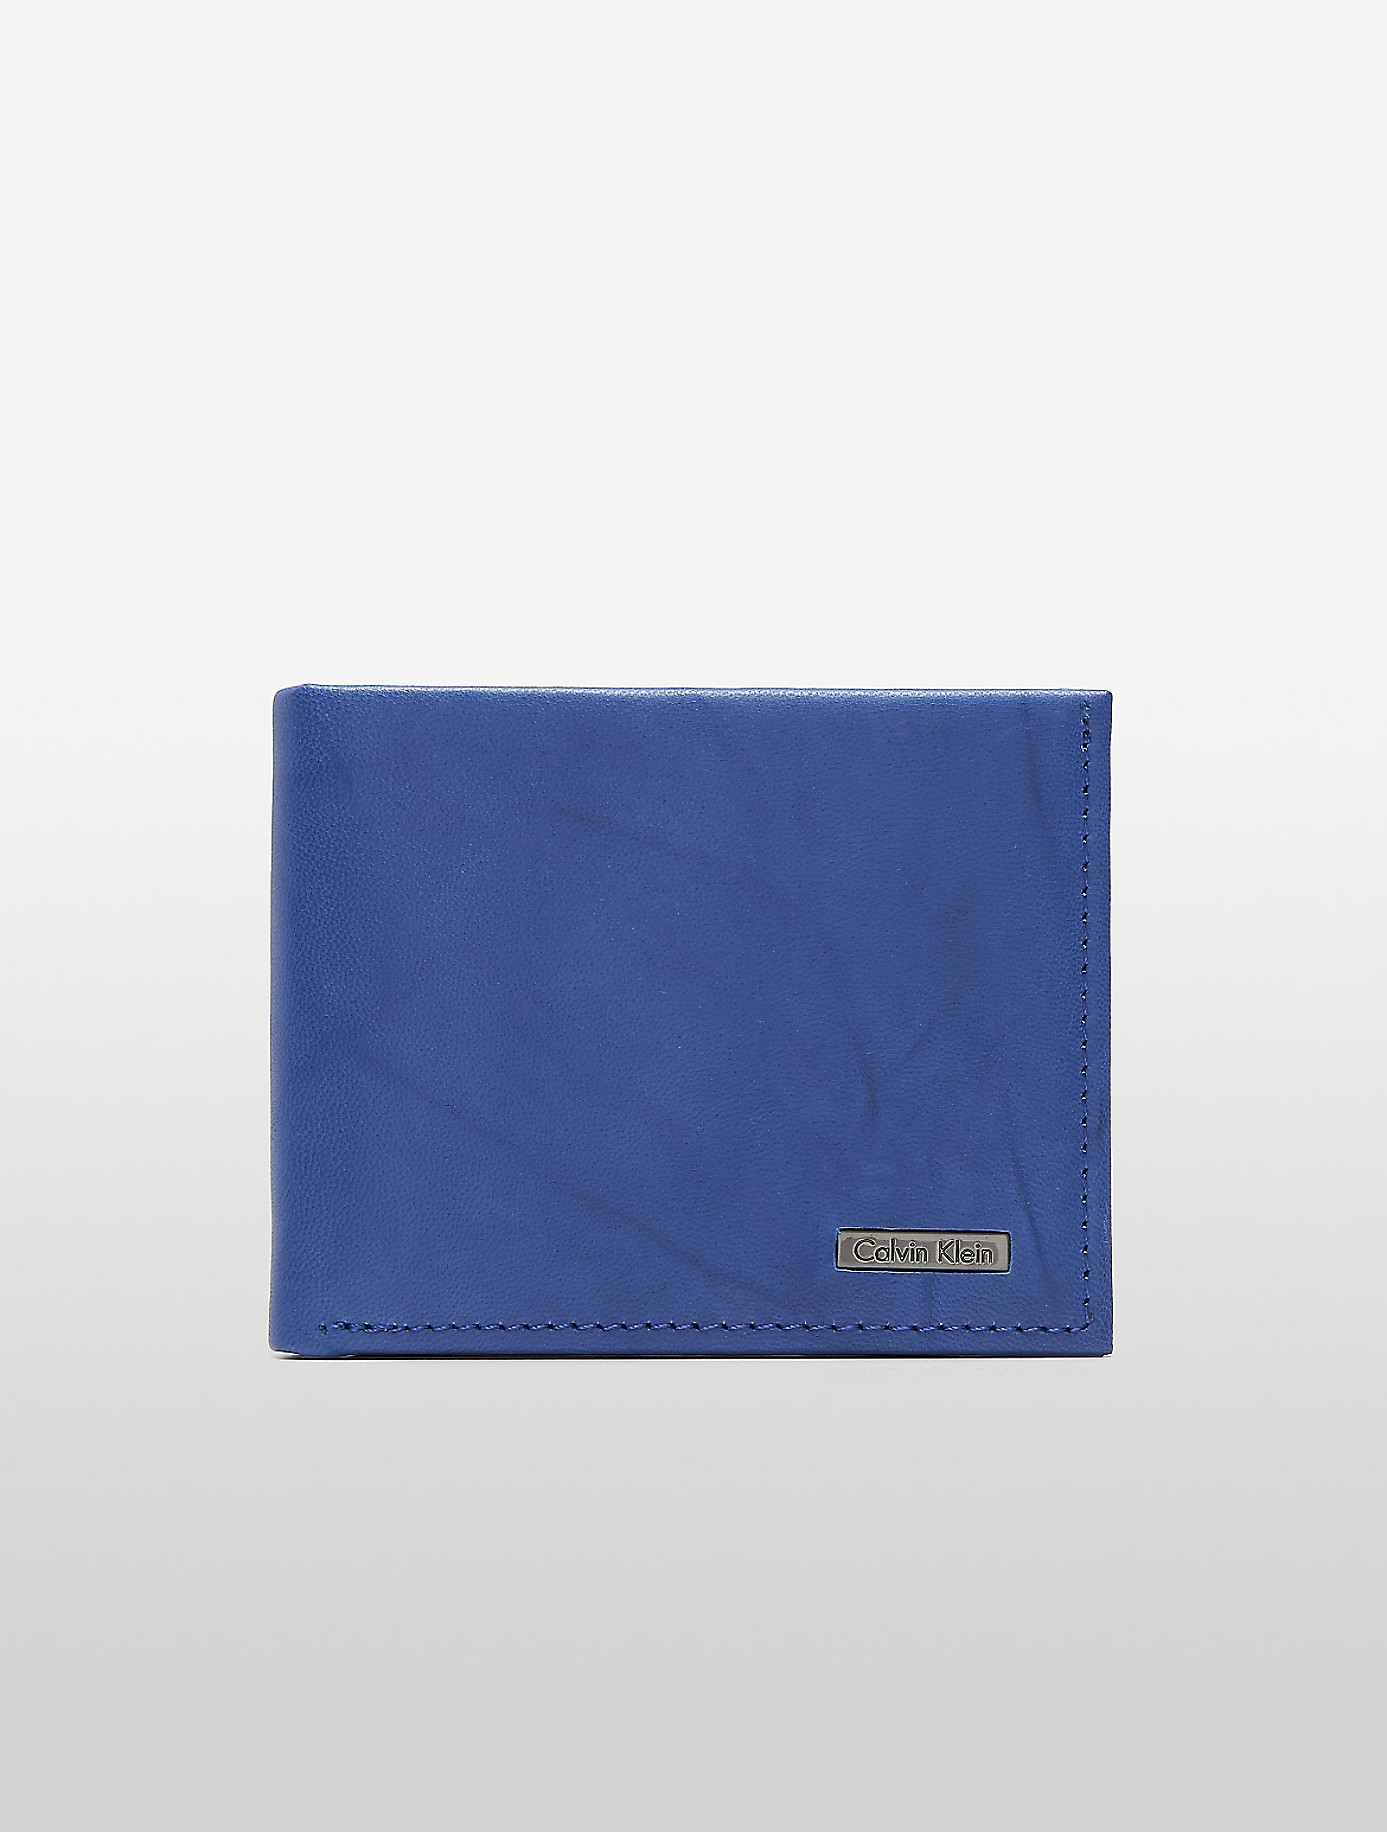 democratische Partij uniek geïrriteerd raken Calvin Klein Leather Marbled Slimfold Wallet in Blue for Men - Lyst